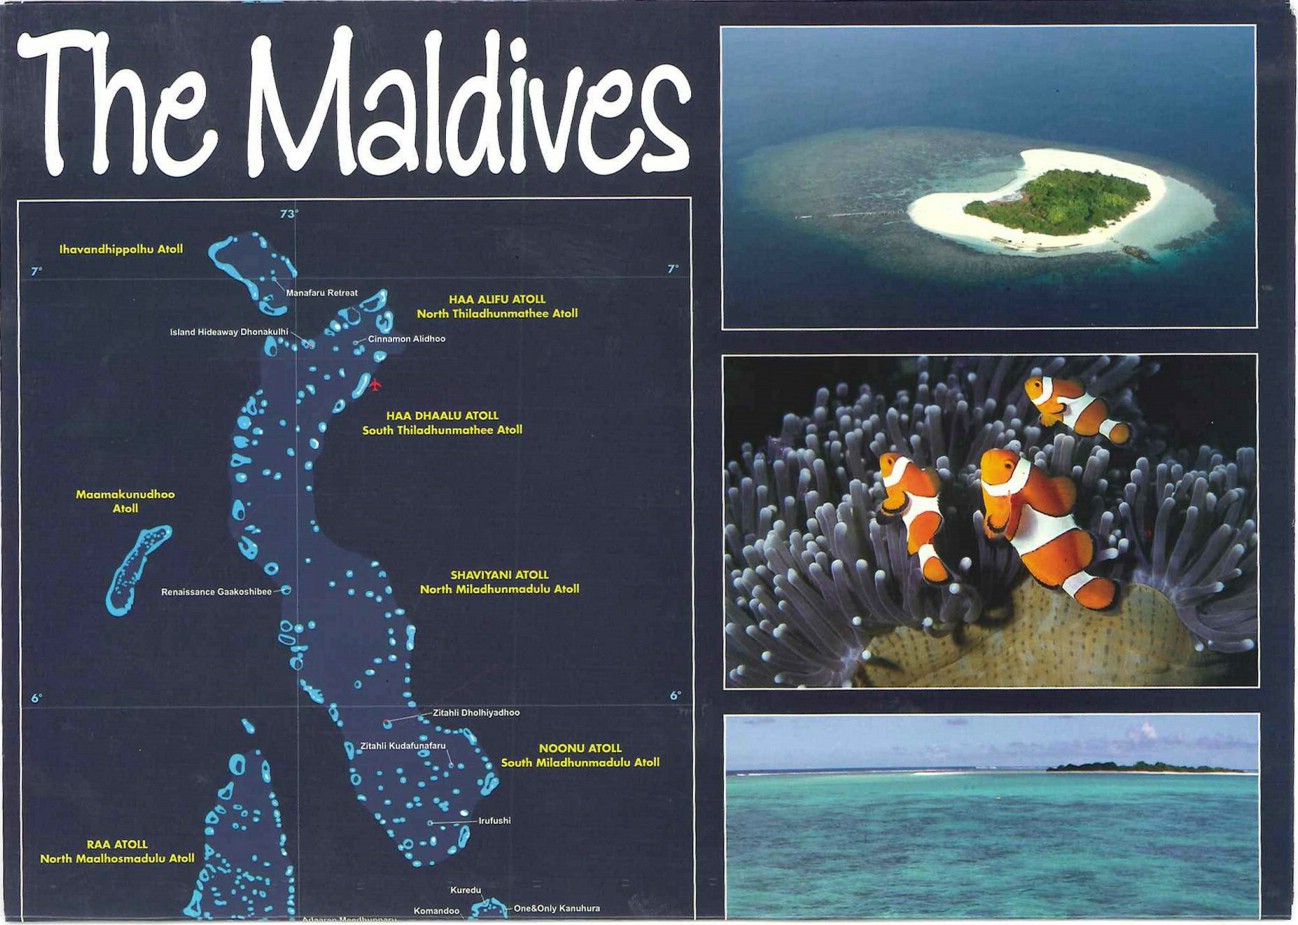 补充:马尔代夫113个岛屿酒店分布地图